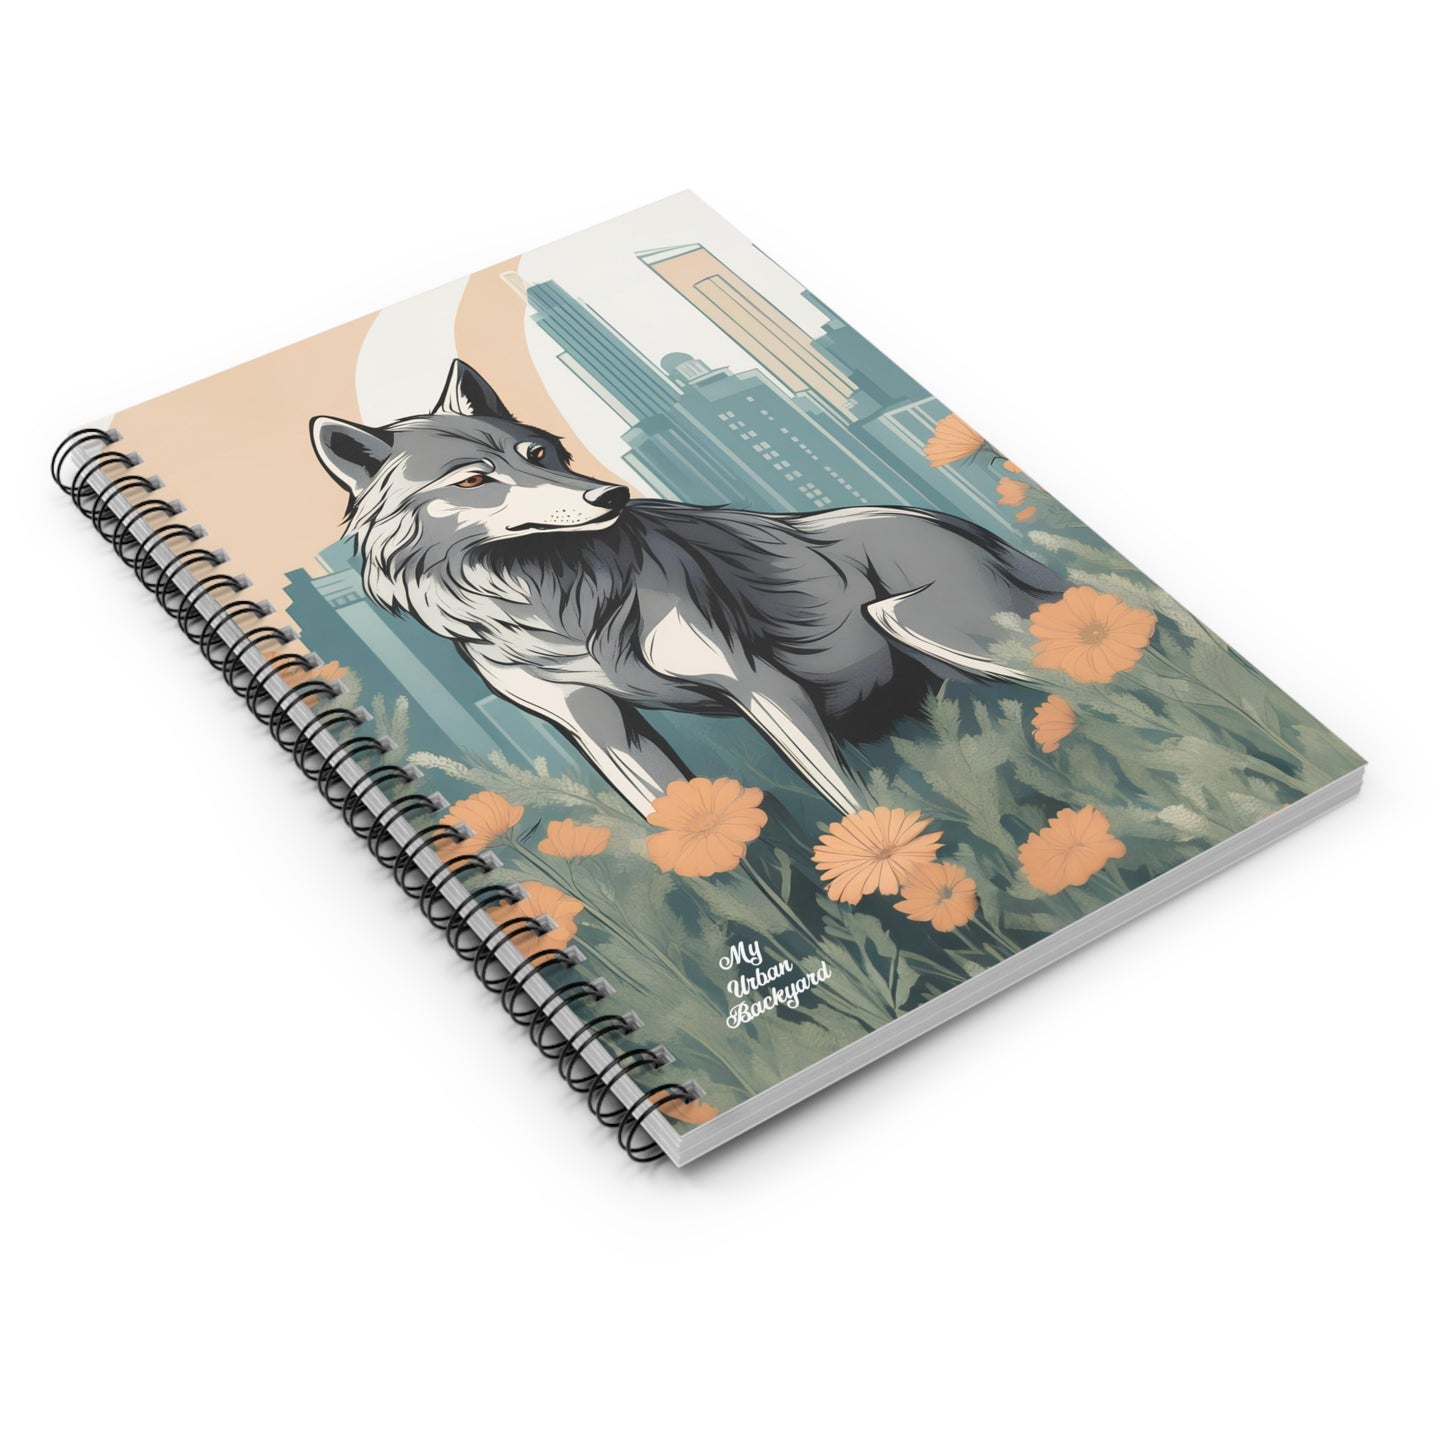 Urban Wolf, Spiral Notebook Journal - Write in Style